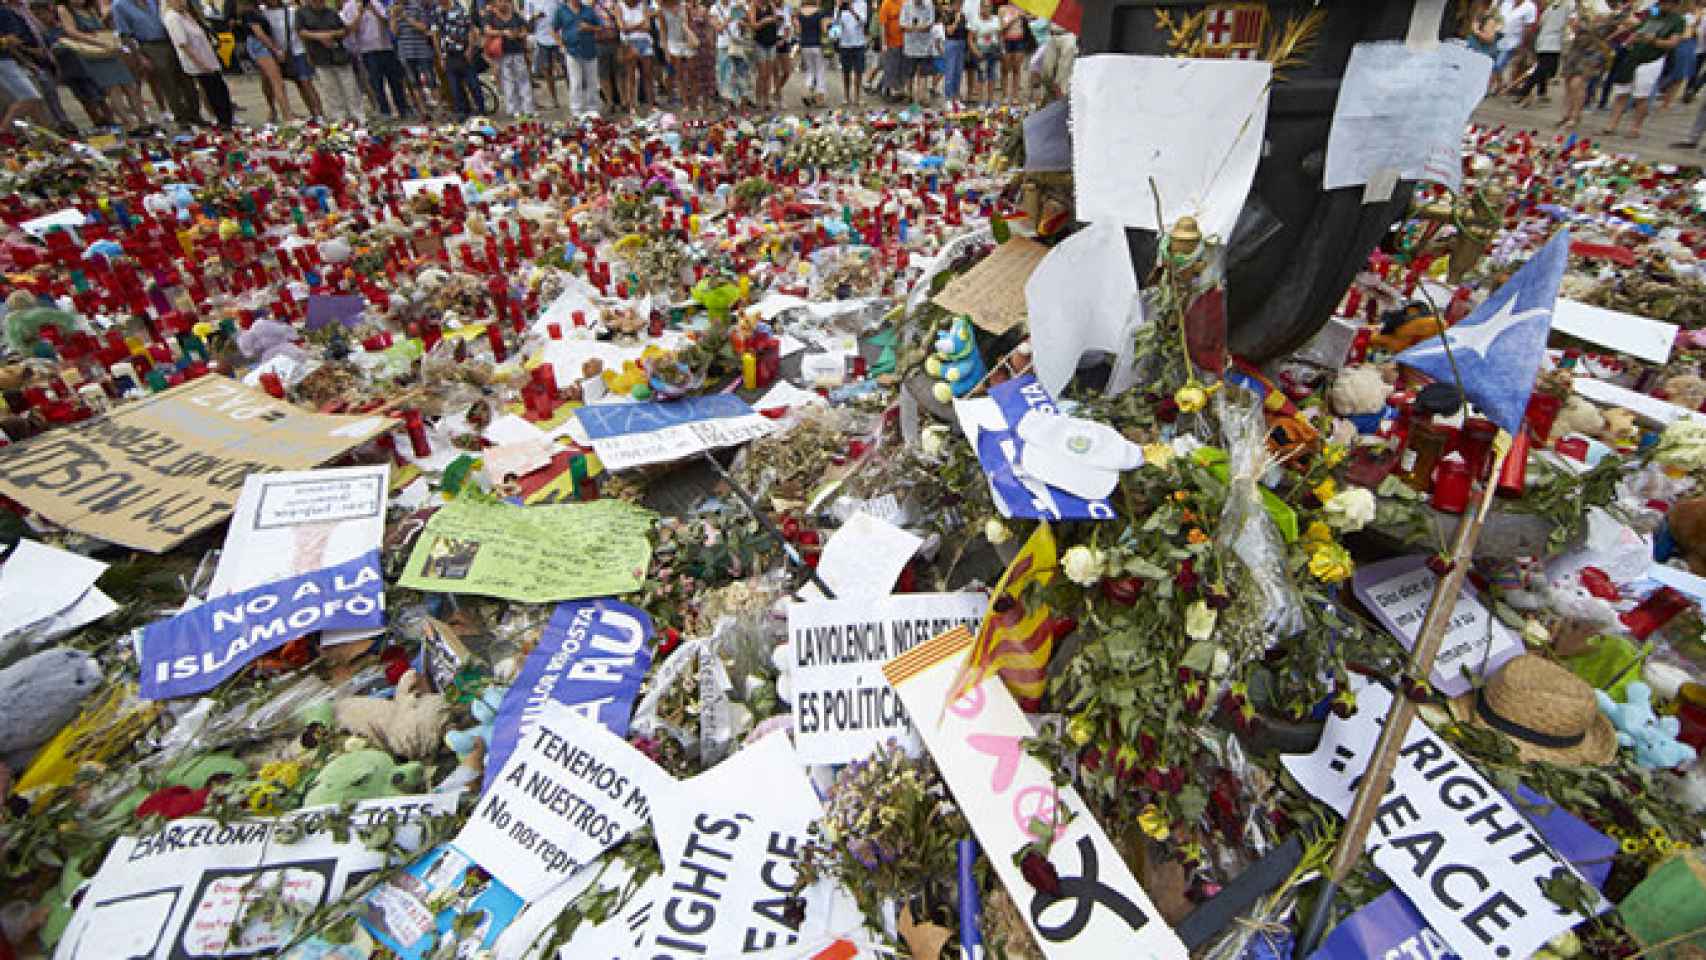 Homenaje a las víctimas del atentado de Barcelona en La Rambla, sin vinculación con los chechenos